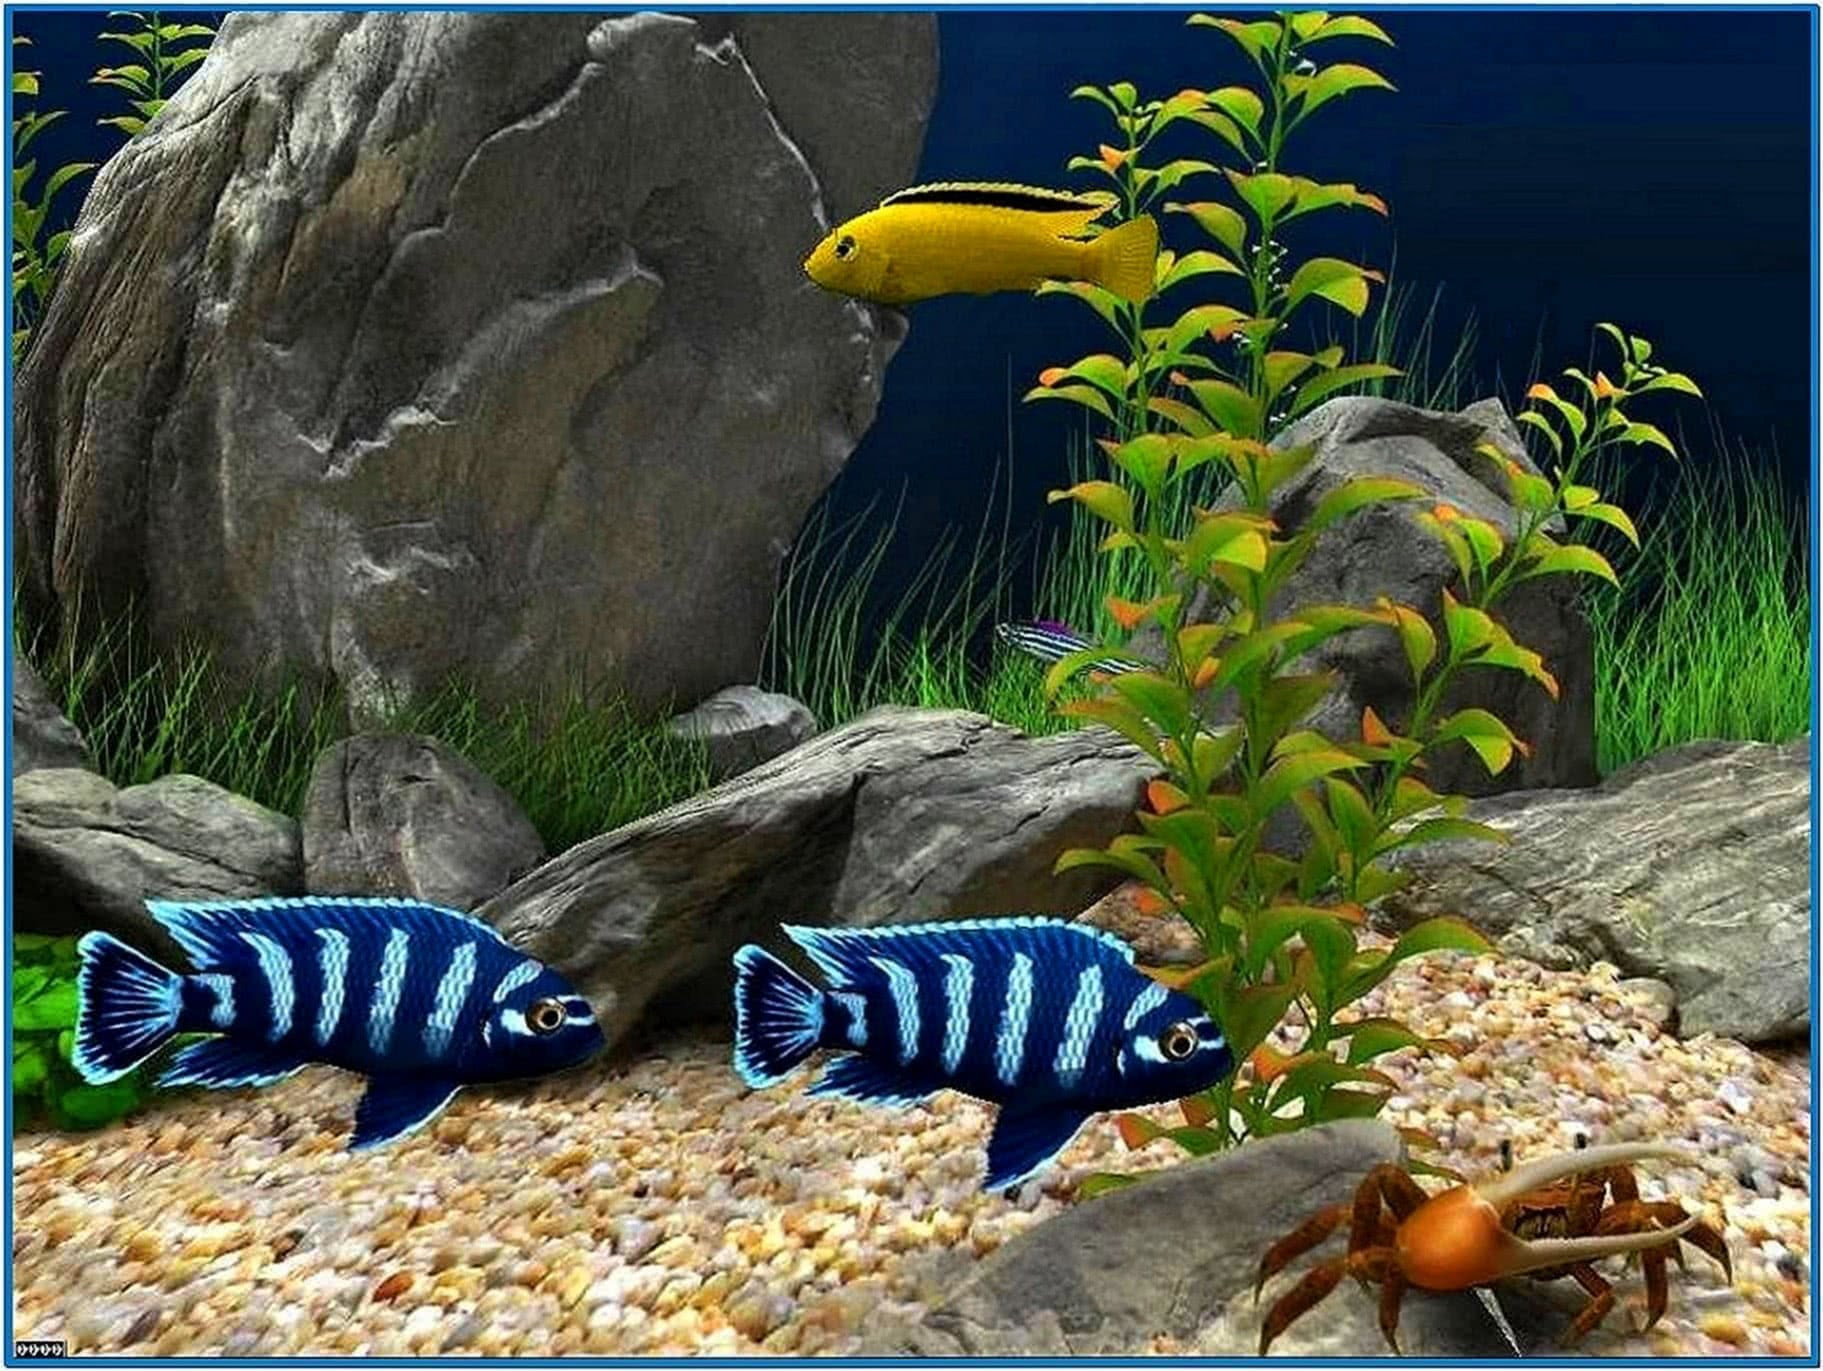 Screensaver Aquarium 3d Windows 7 Image Num 52